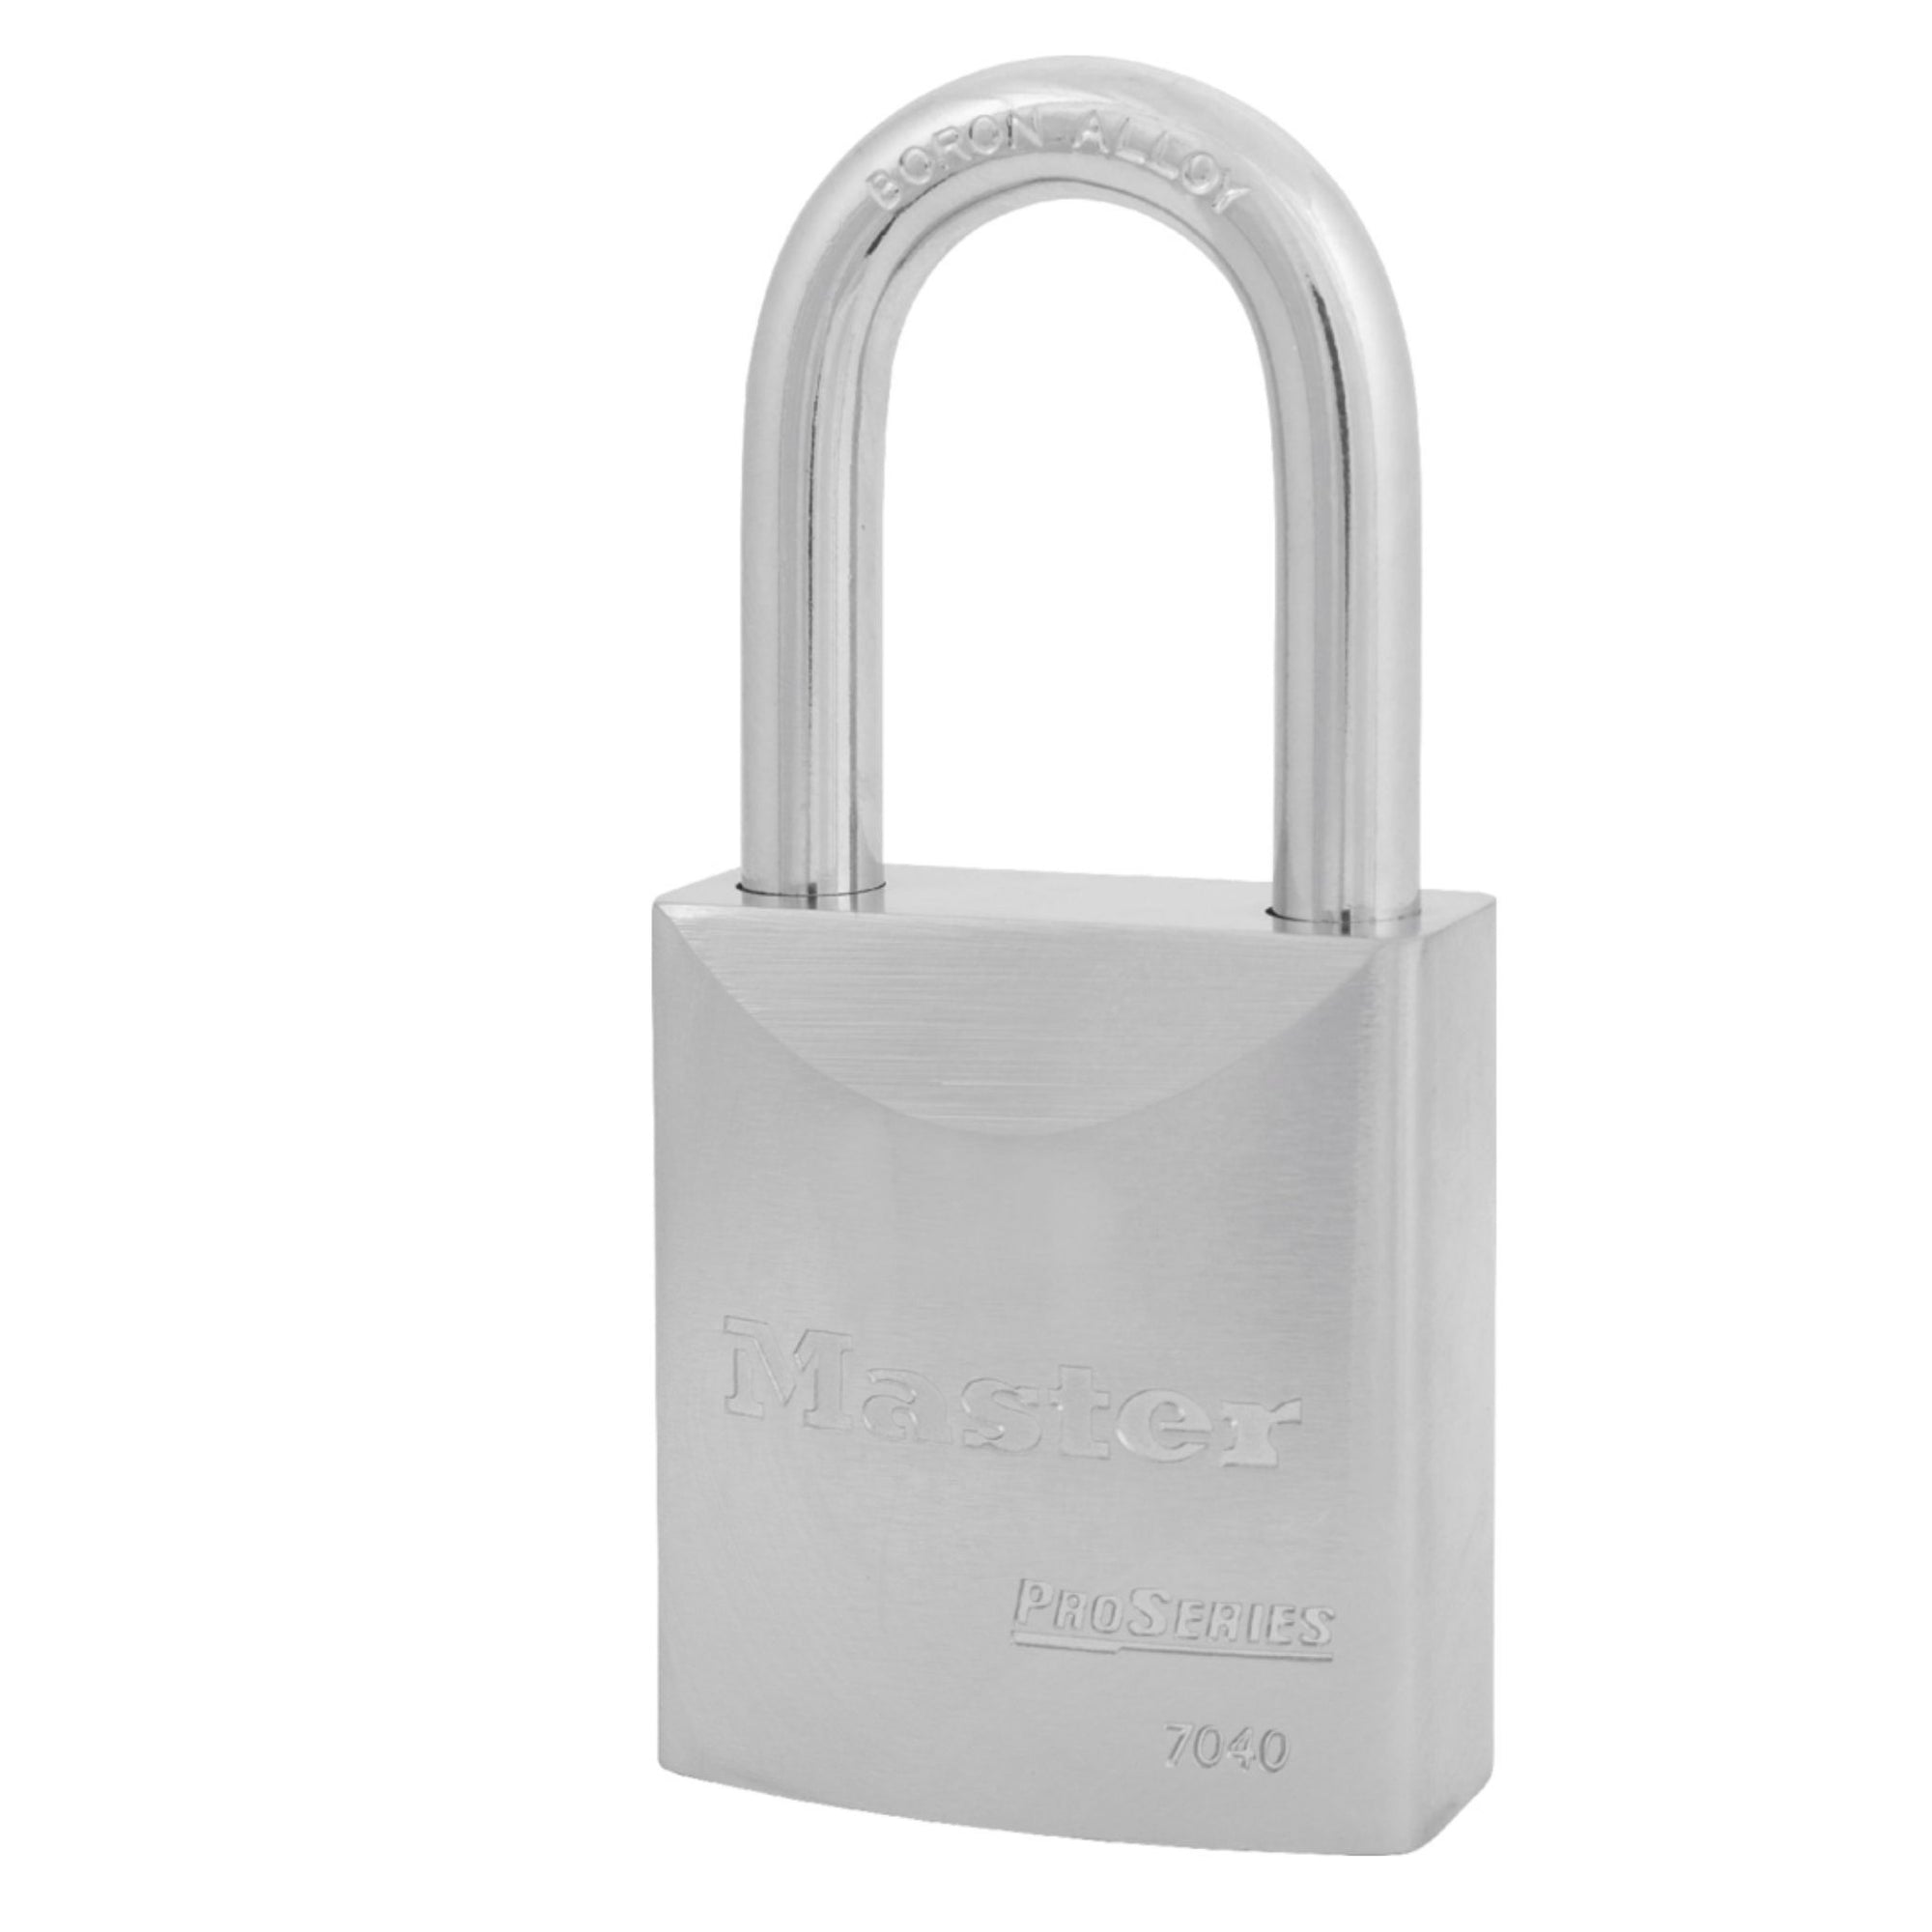 Master Lock 7040KALF Pro Series Steel Padlock Keyed Alike Locks with 1-1/2" Shackle - The Lock Source